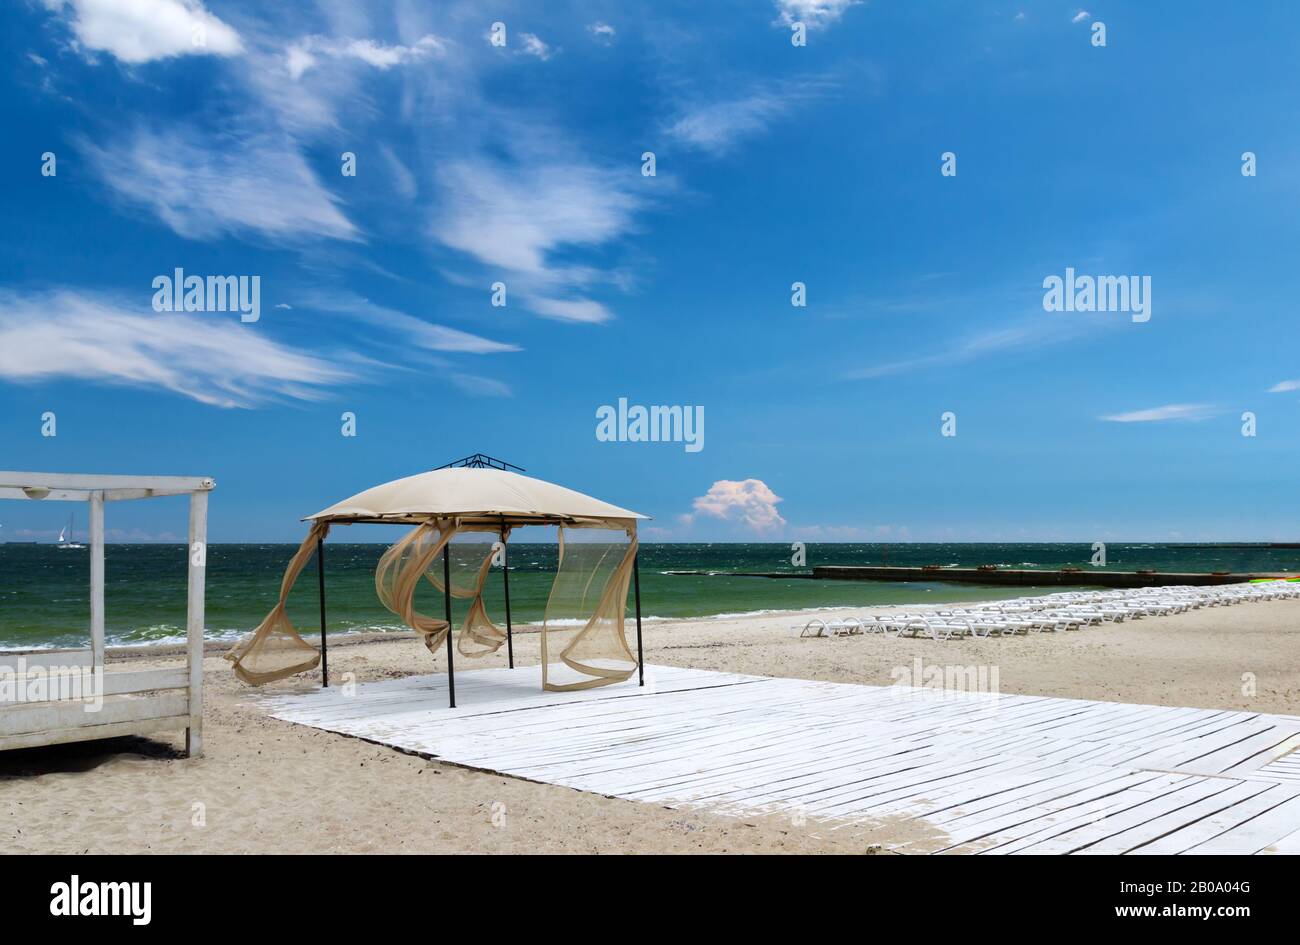 Sommer, duftige Sonne, windige Wetterlage, eingelassene Strände mit Sonnenpavillon und leeren Sonnenliegen. Blauer Himmel auf dem Hintergrund Stockfoto